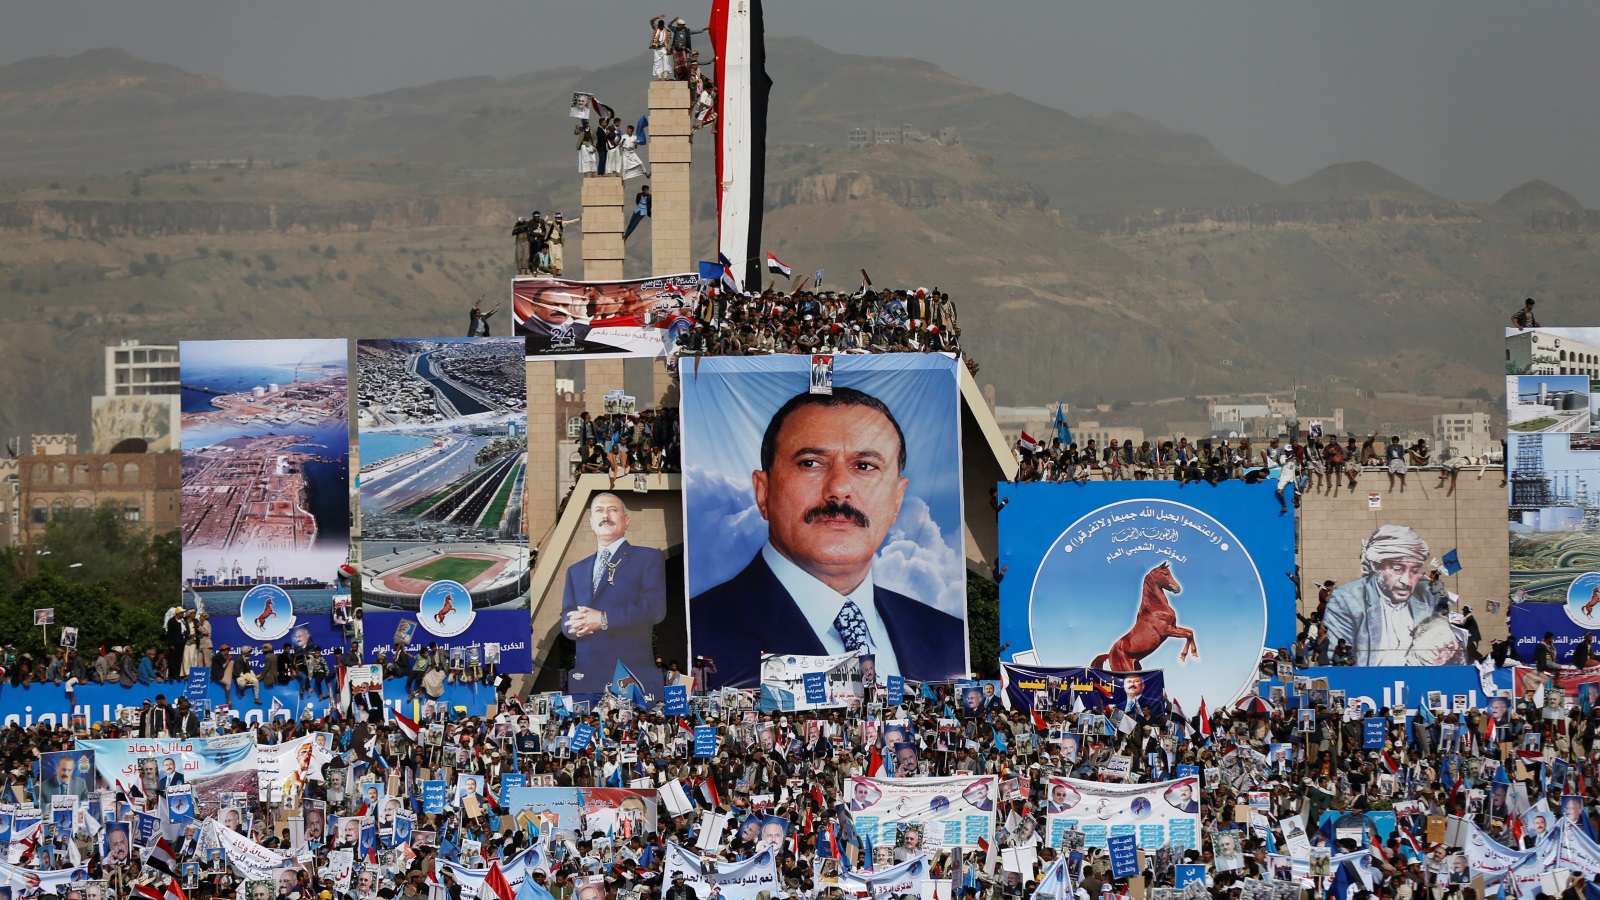 بات حزب صالح أكثر هشاشة وعجزا عن الحفاظ على رؤيته الموحدة وتوجهاته المستقلة، بفعل التشرذم، والتشكيلات المتعددة التي تكونت قبل وبُعيد تصفية زعيمه